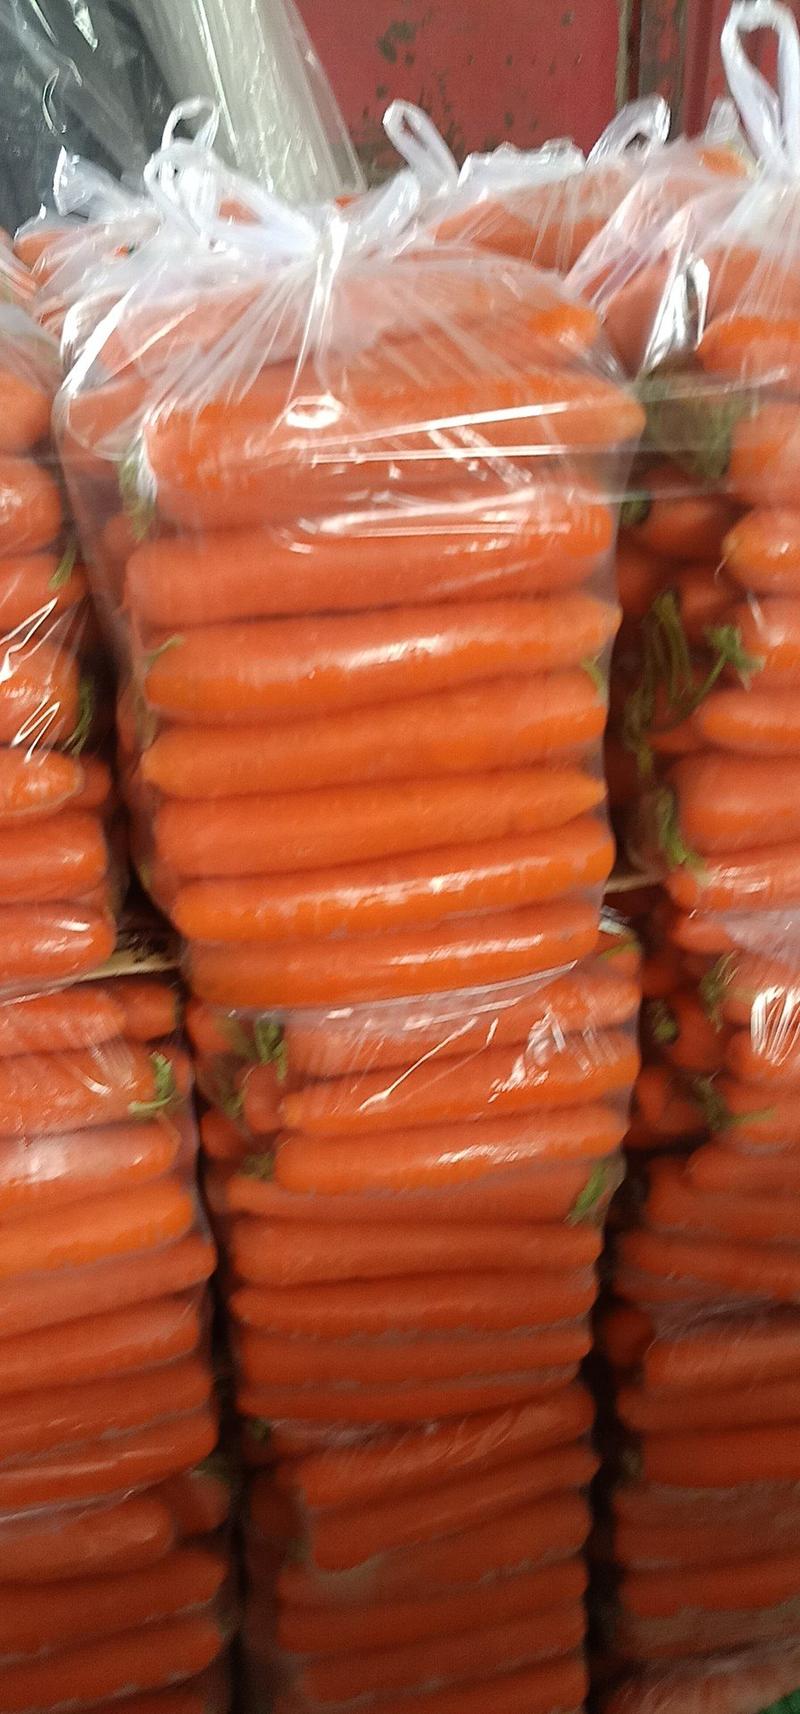 红萝卜，三红胡萝卜各种规格精品包装，直供电商